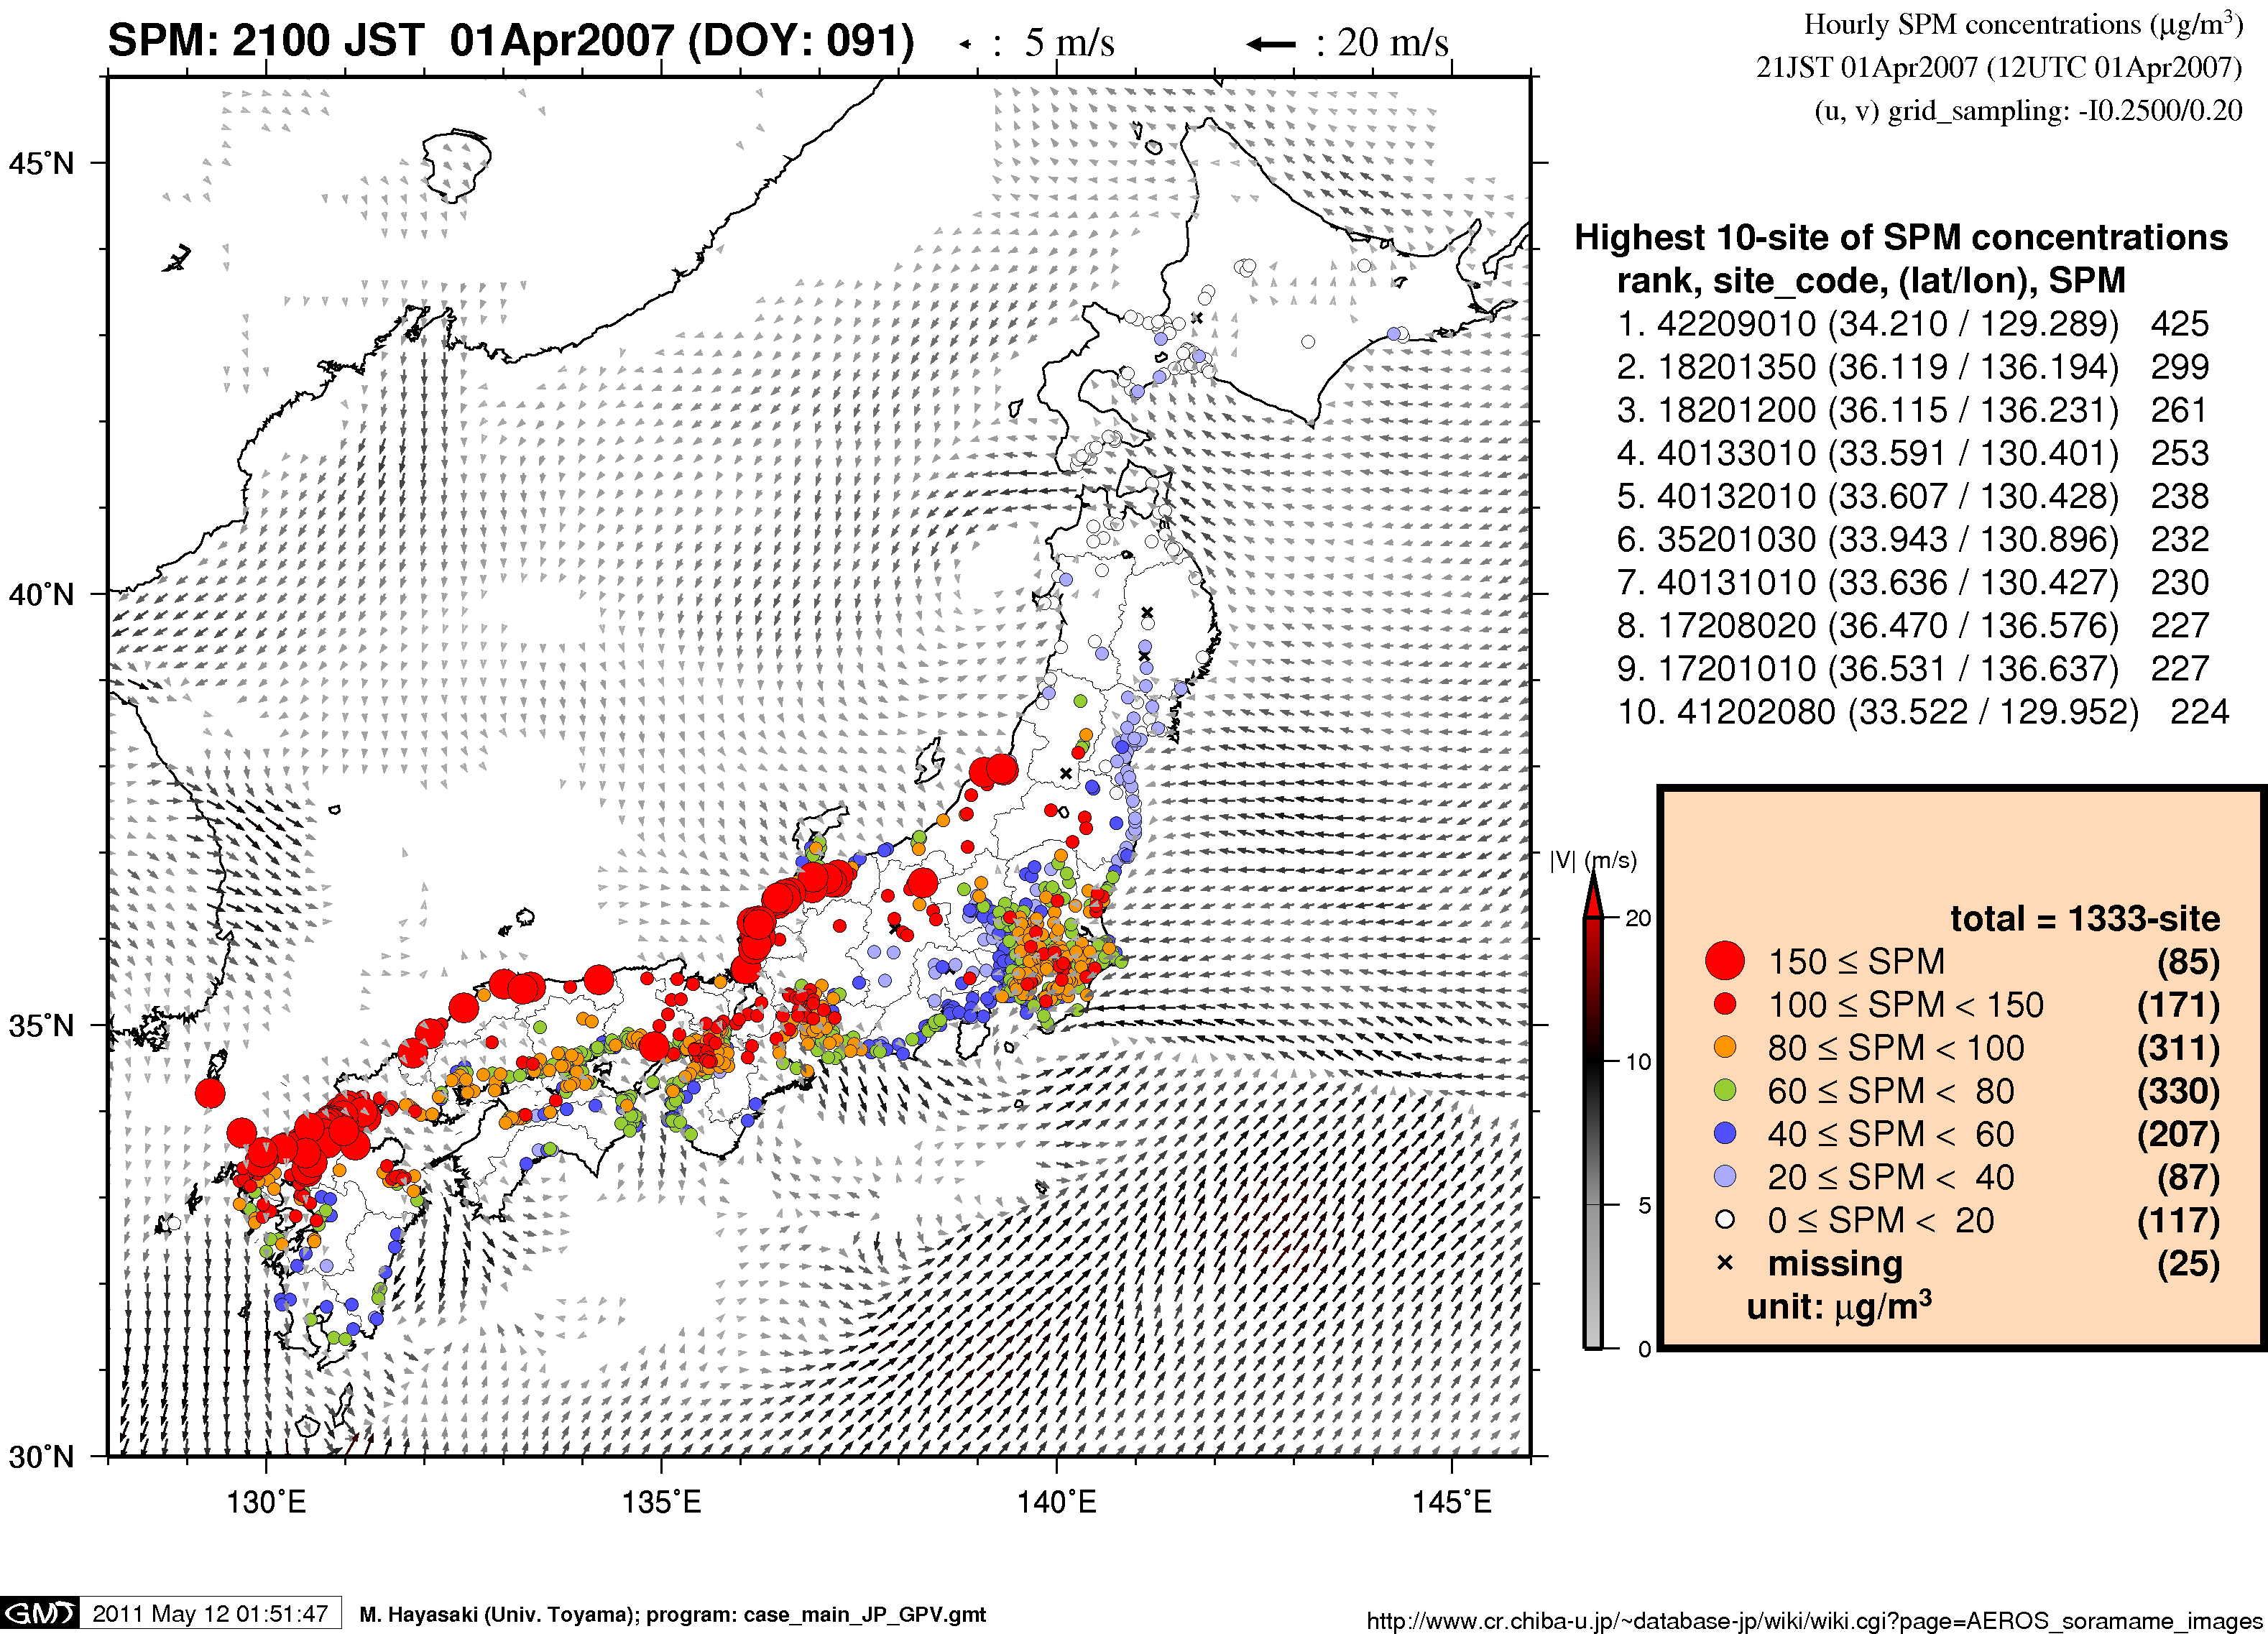 SPM concentration in Japan (21JST 01Apr2007)